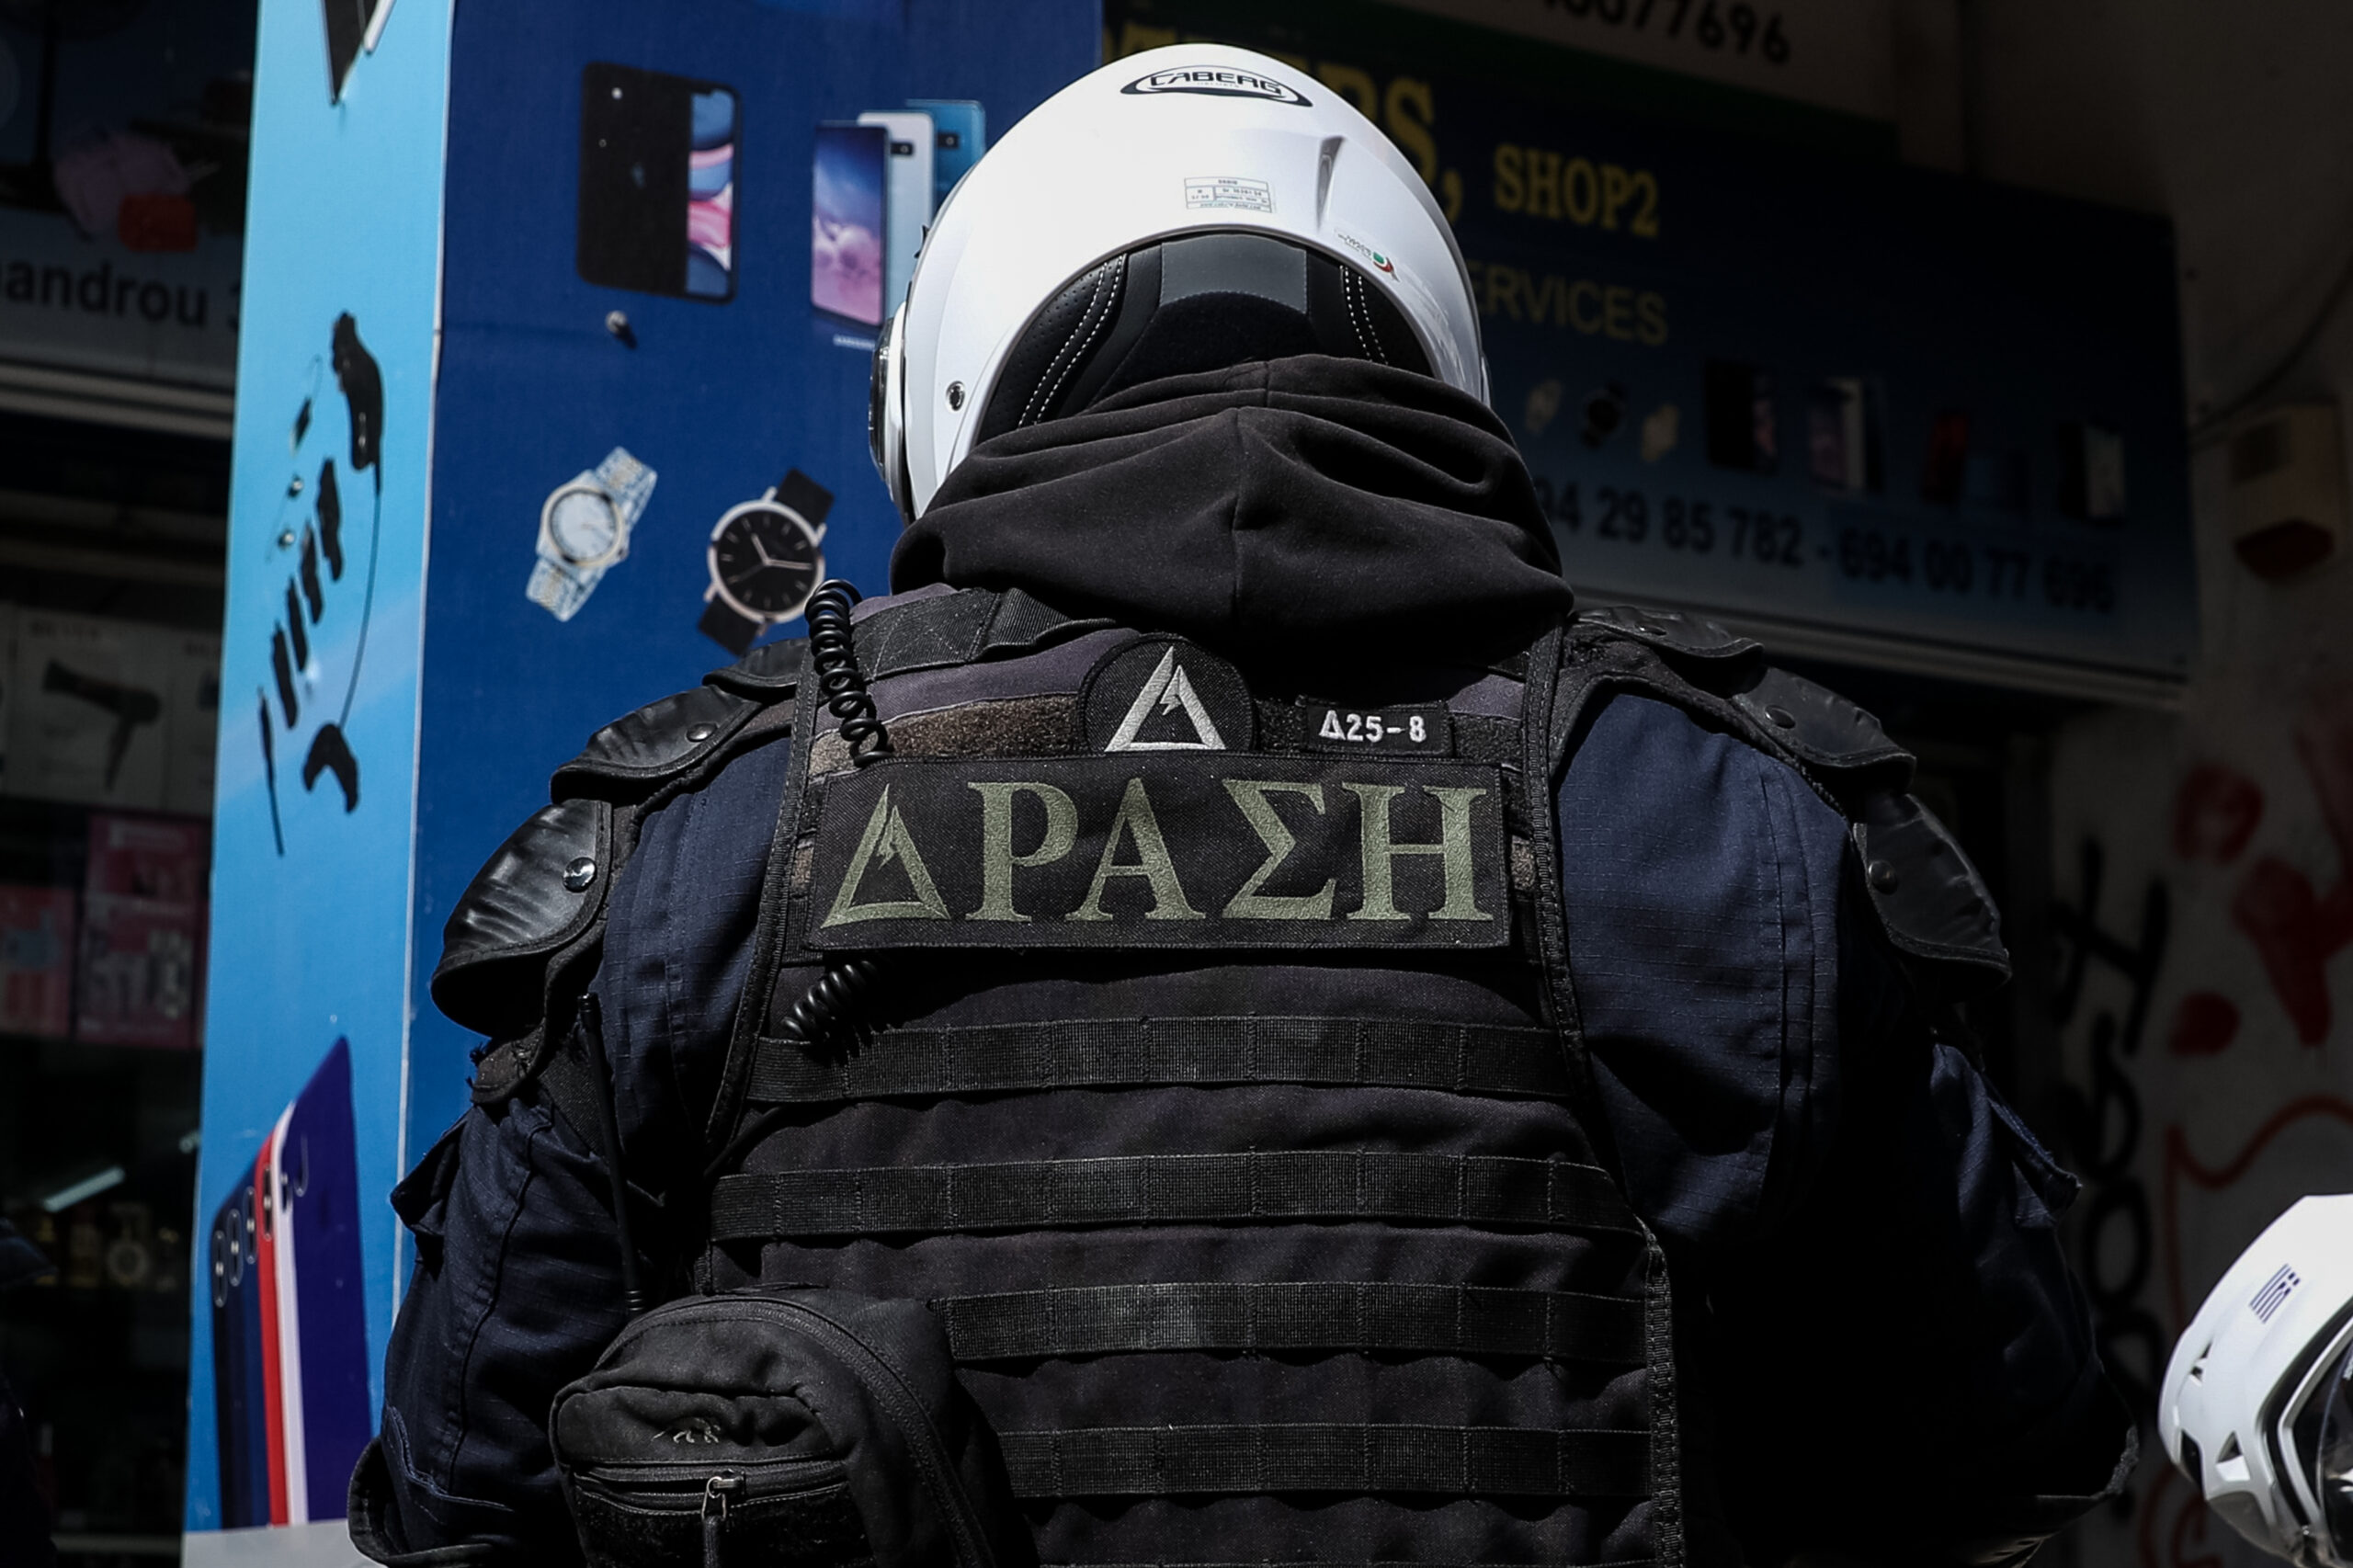 Με 33 νέους διαπραγματευτές ενισχύεται η Oμάδα Διαπραγματευτών Κρίσεων της Ελληνικής Αστυνομίας